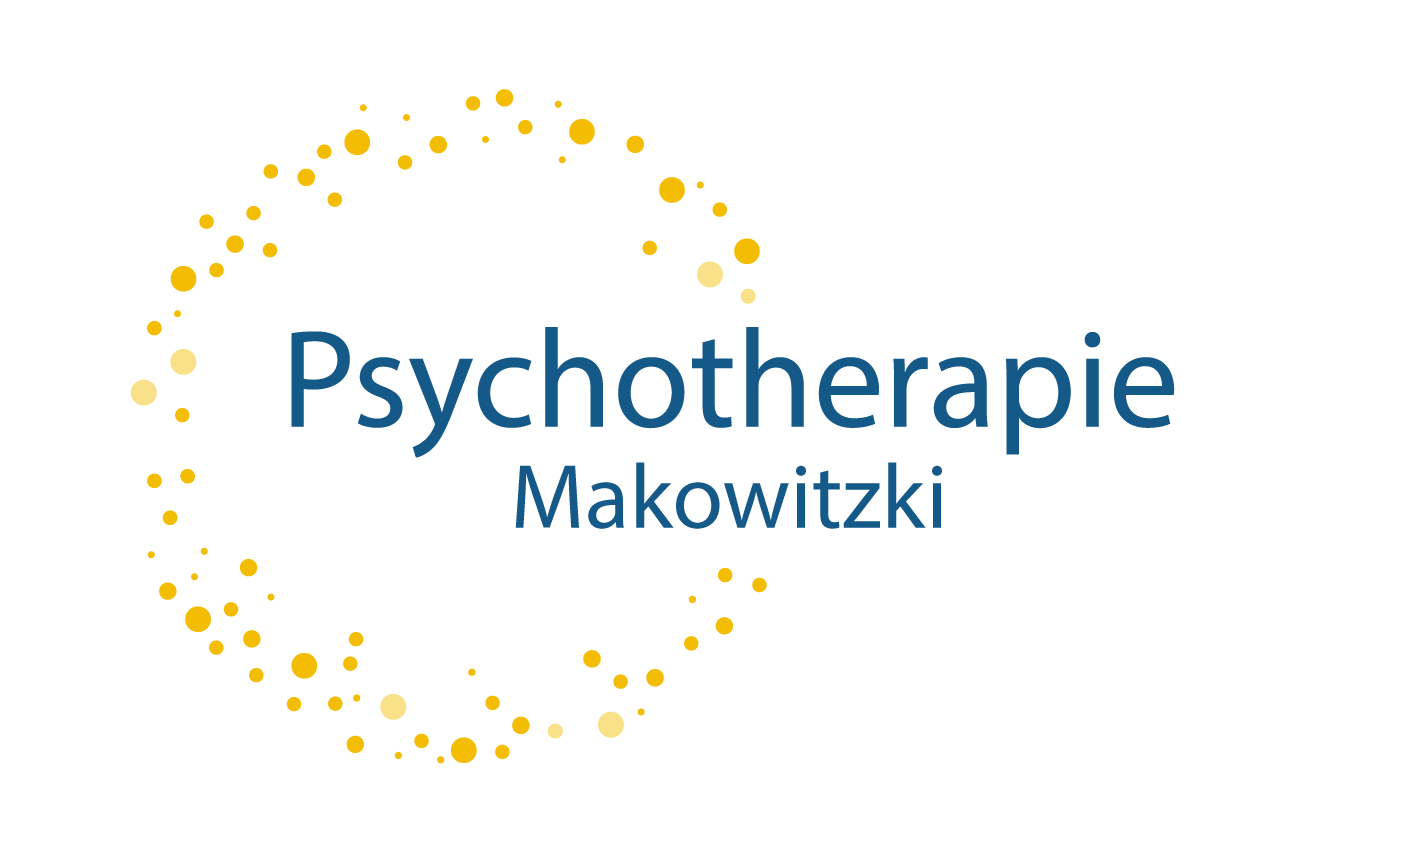 Psychotherapie Makowitzki